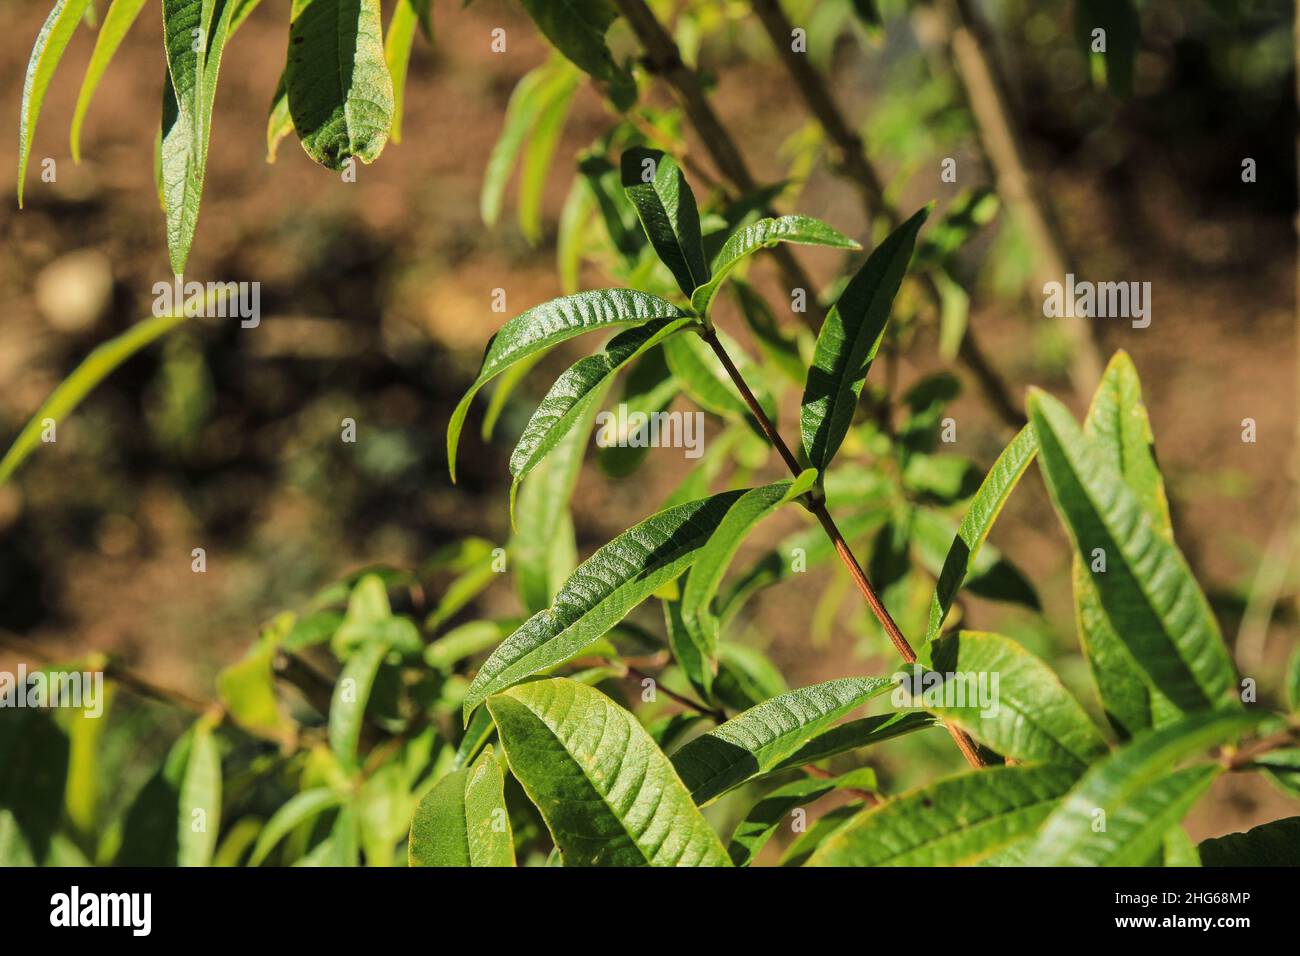 Aloysia citriodora plant in the garden under the sun Stock Photo